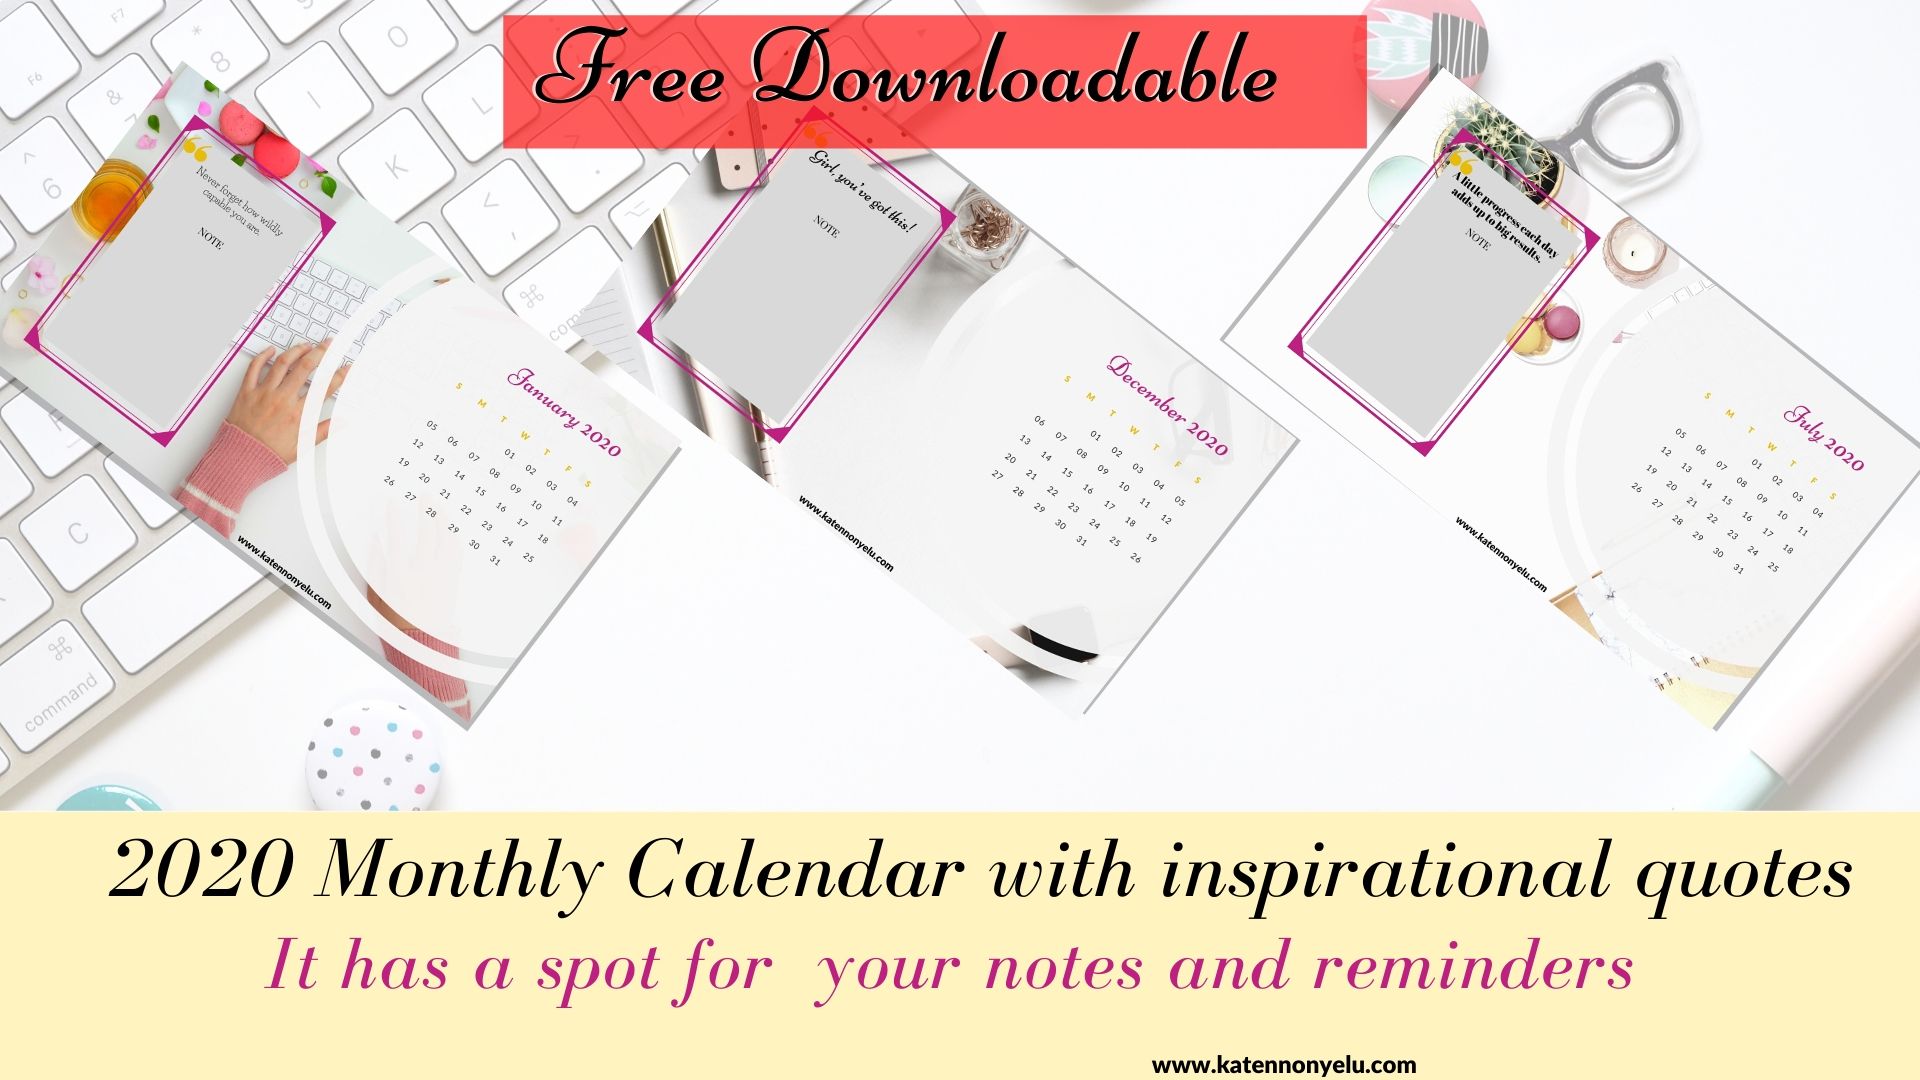 Kate Nnonyelu free Calendars